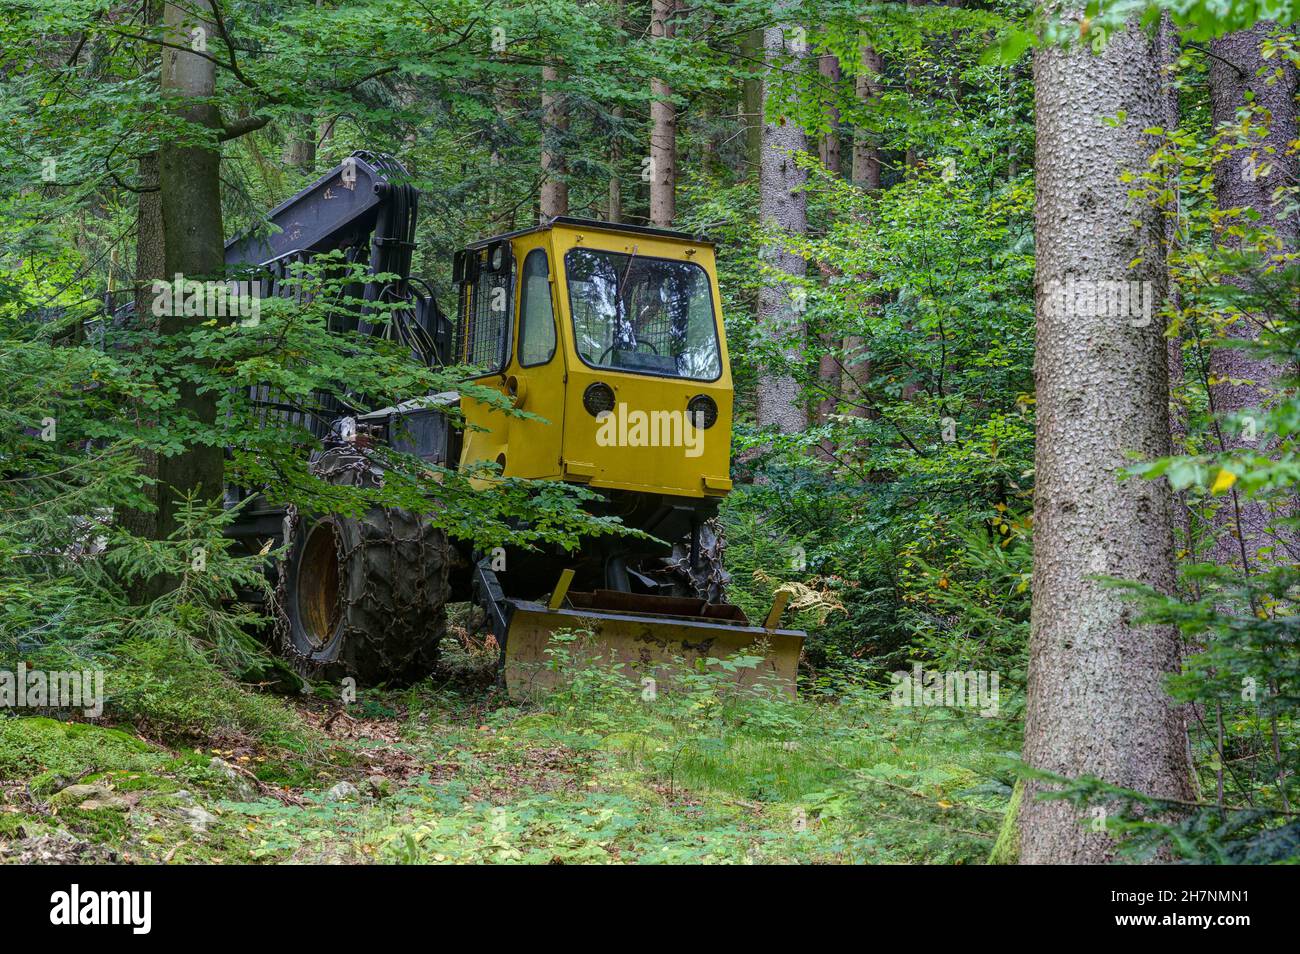 El monstruo en el bosque, una máquina de recolección de madera se encuentra entre los árboles y mira entre las hojas con sus luces redondas. Foto de stock